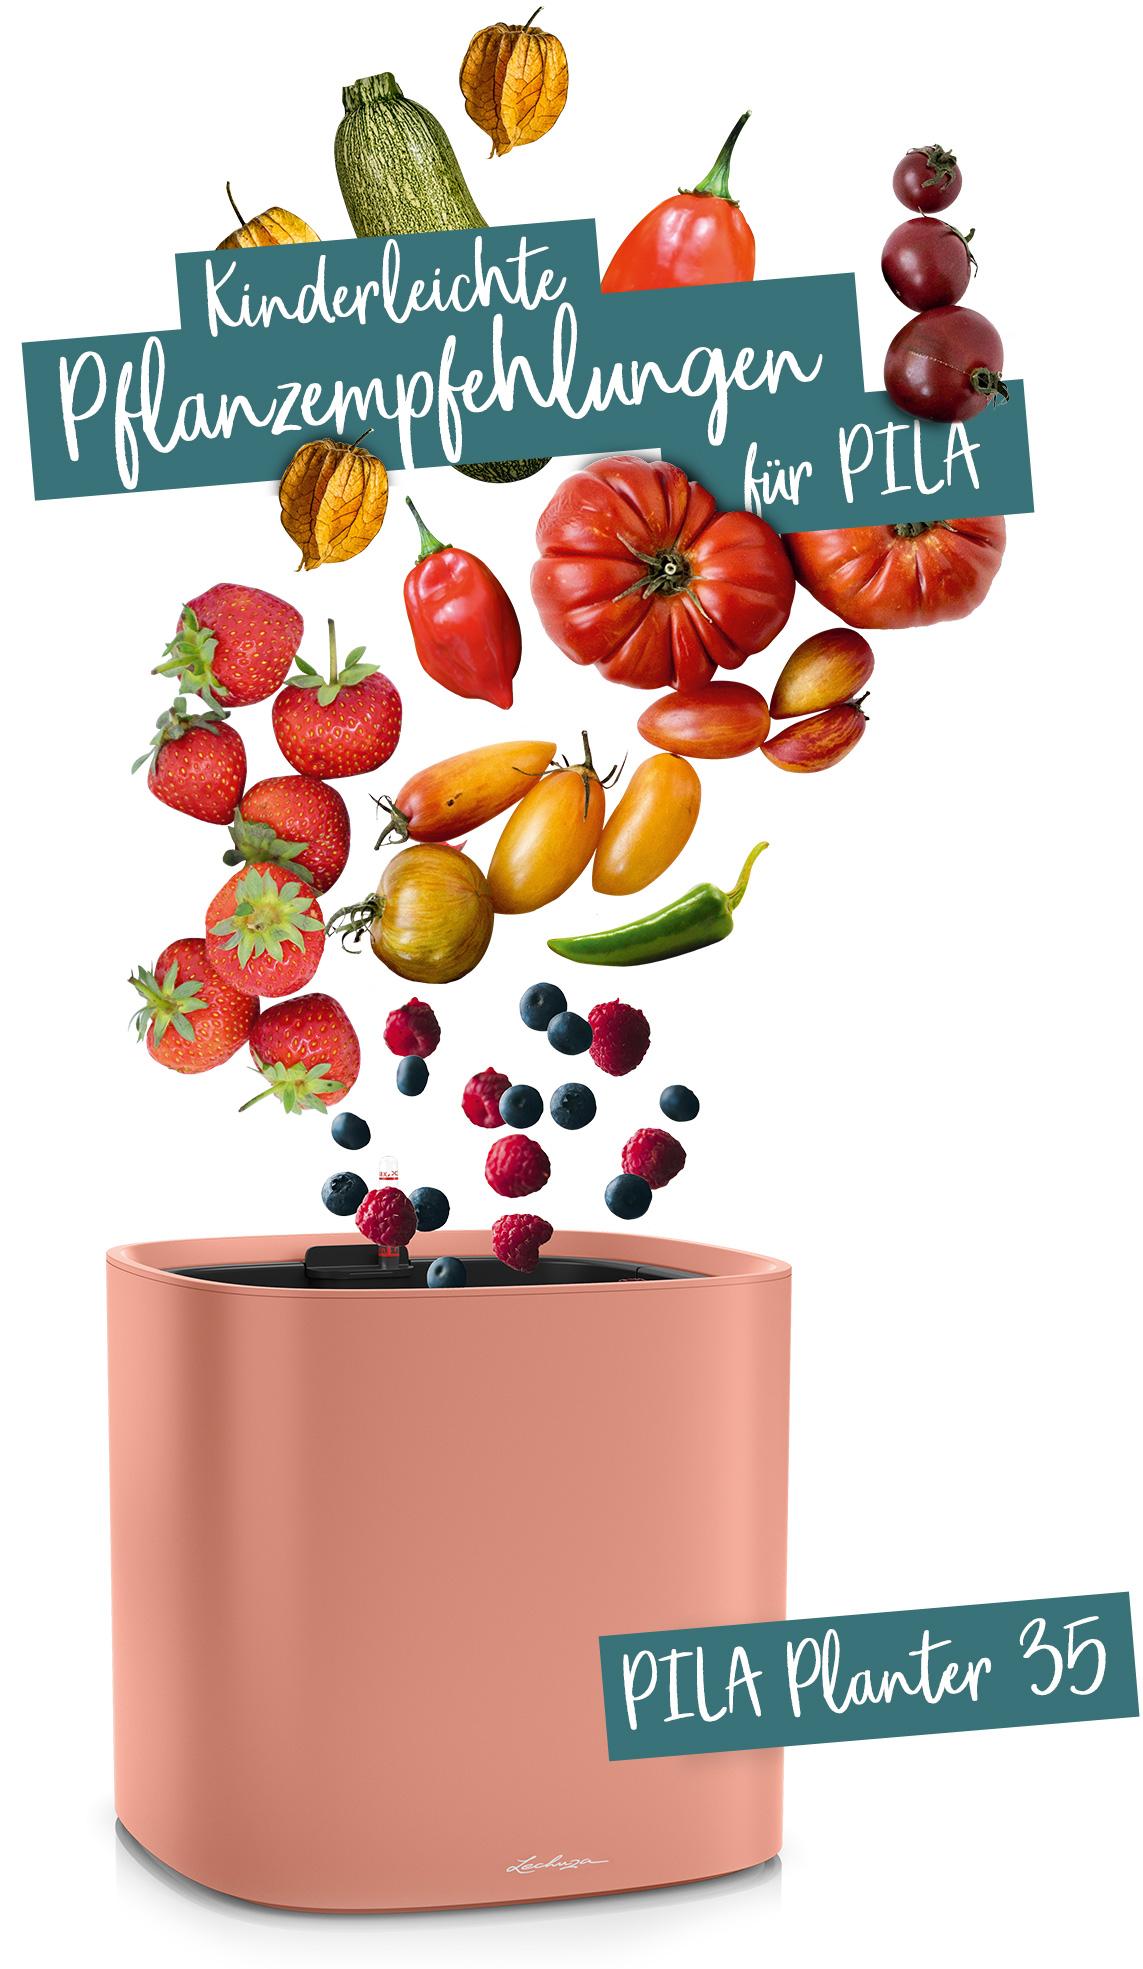 PILA Planter 35 empfohlen für Obst und Gemüse